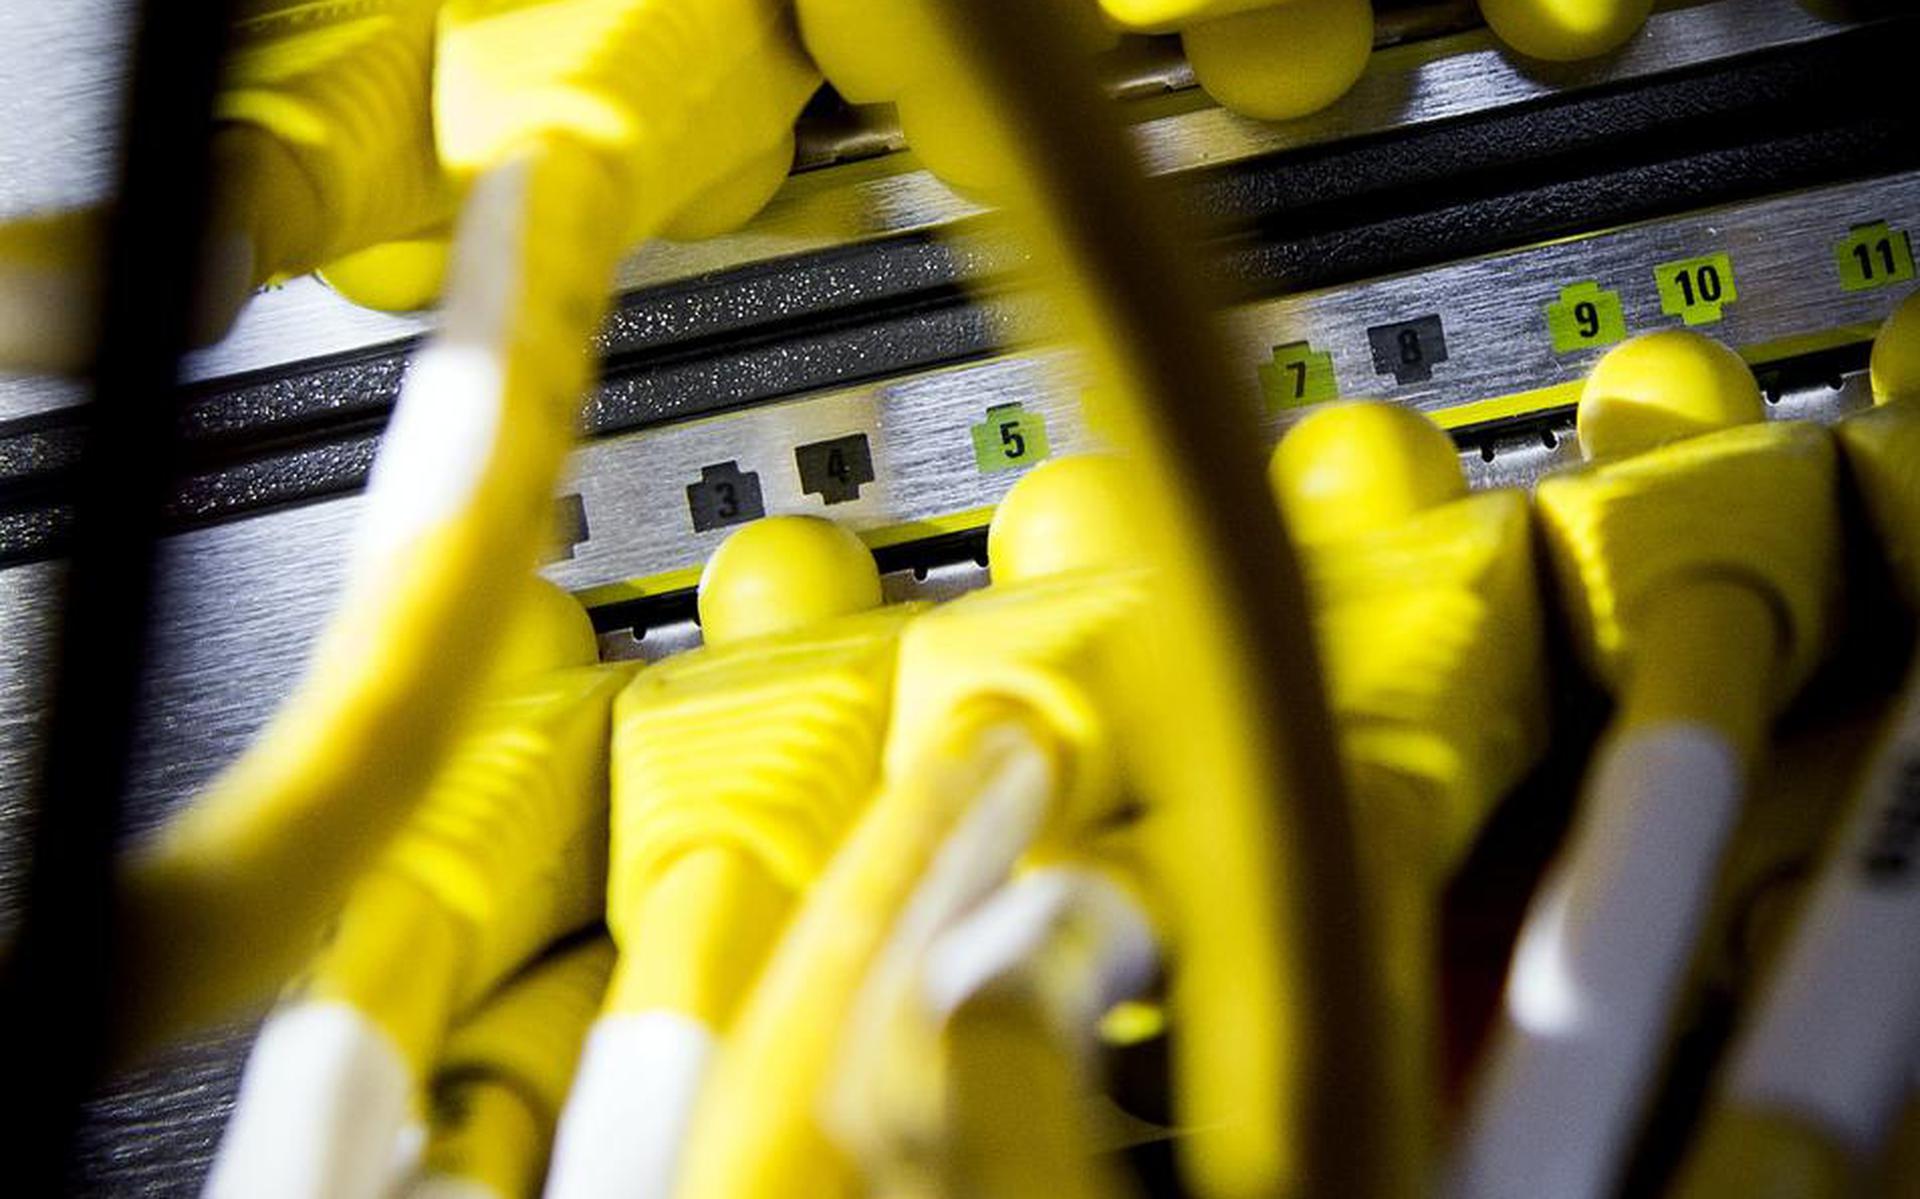 2014-08-12 16:11:02 RIJSWIJK - Kabels in een serverruimte. Criminelen gebruiken steeds vaker gebruik van netwerken in Nederland om cyberaanvallen te plegen. ANP XTRA KOEN VAN WEEL